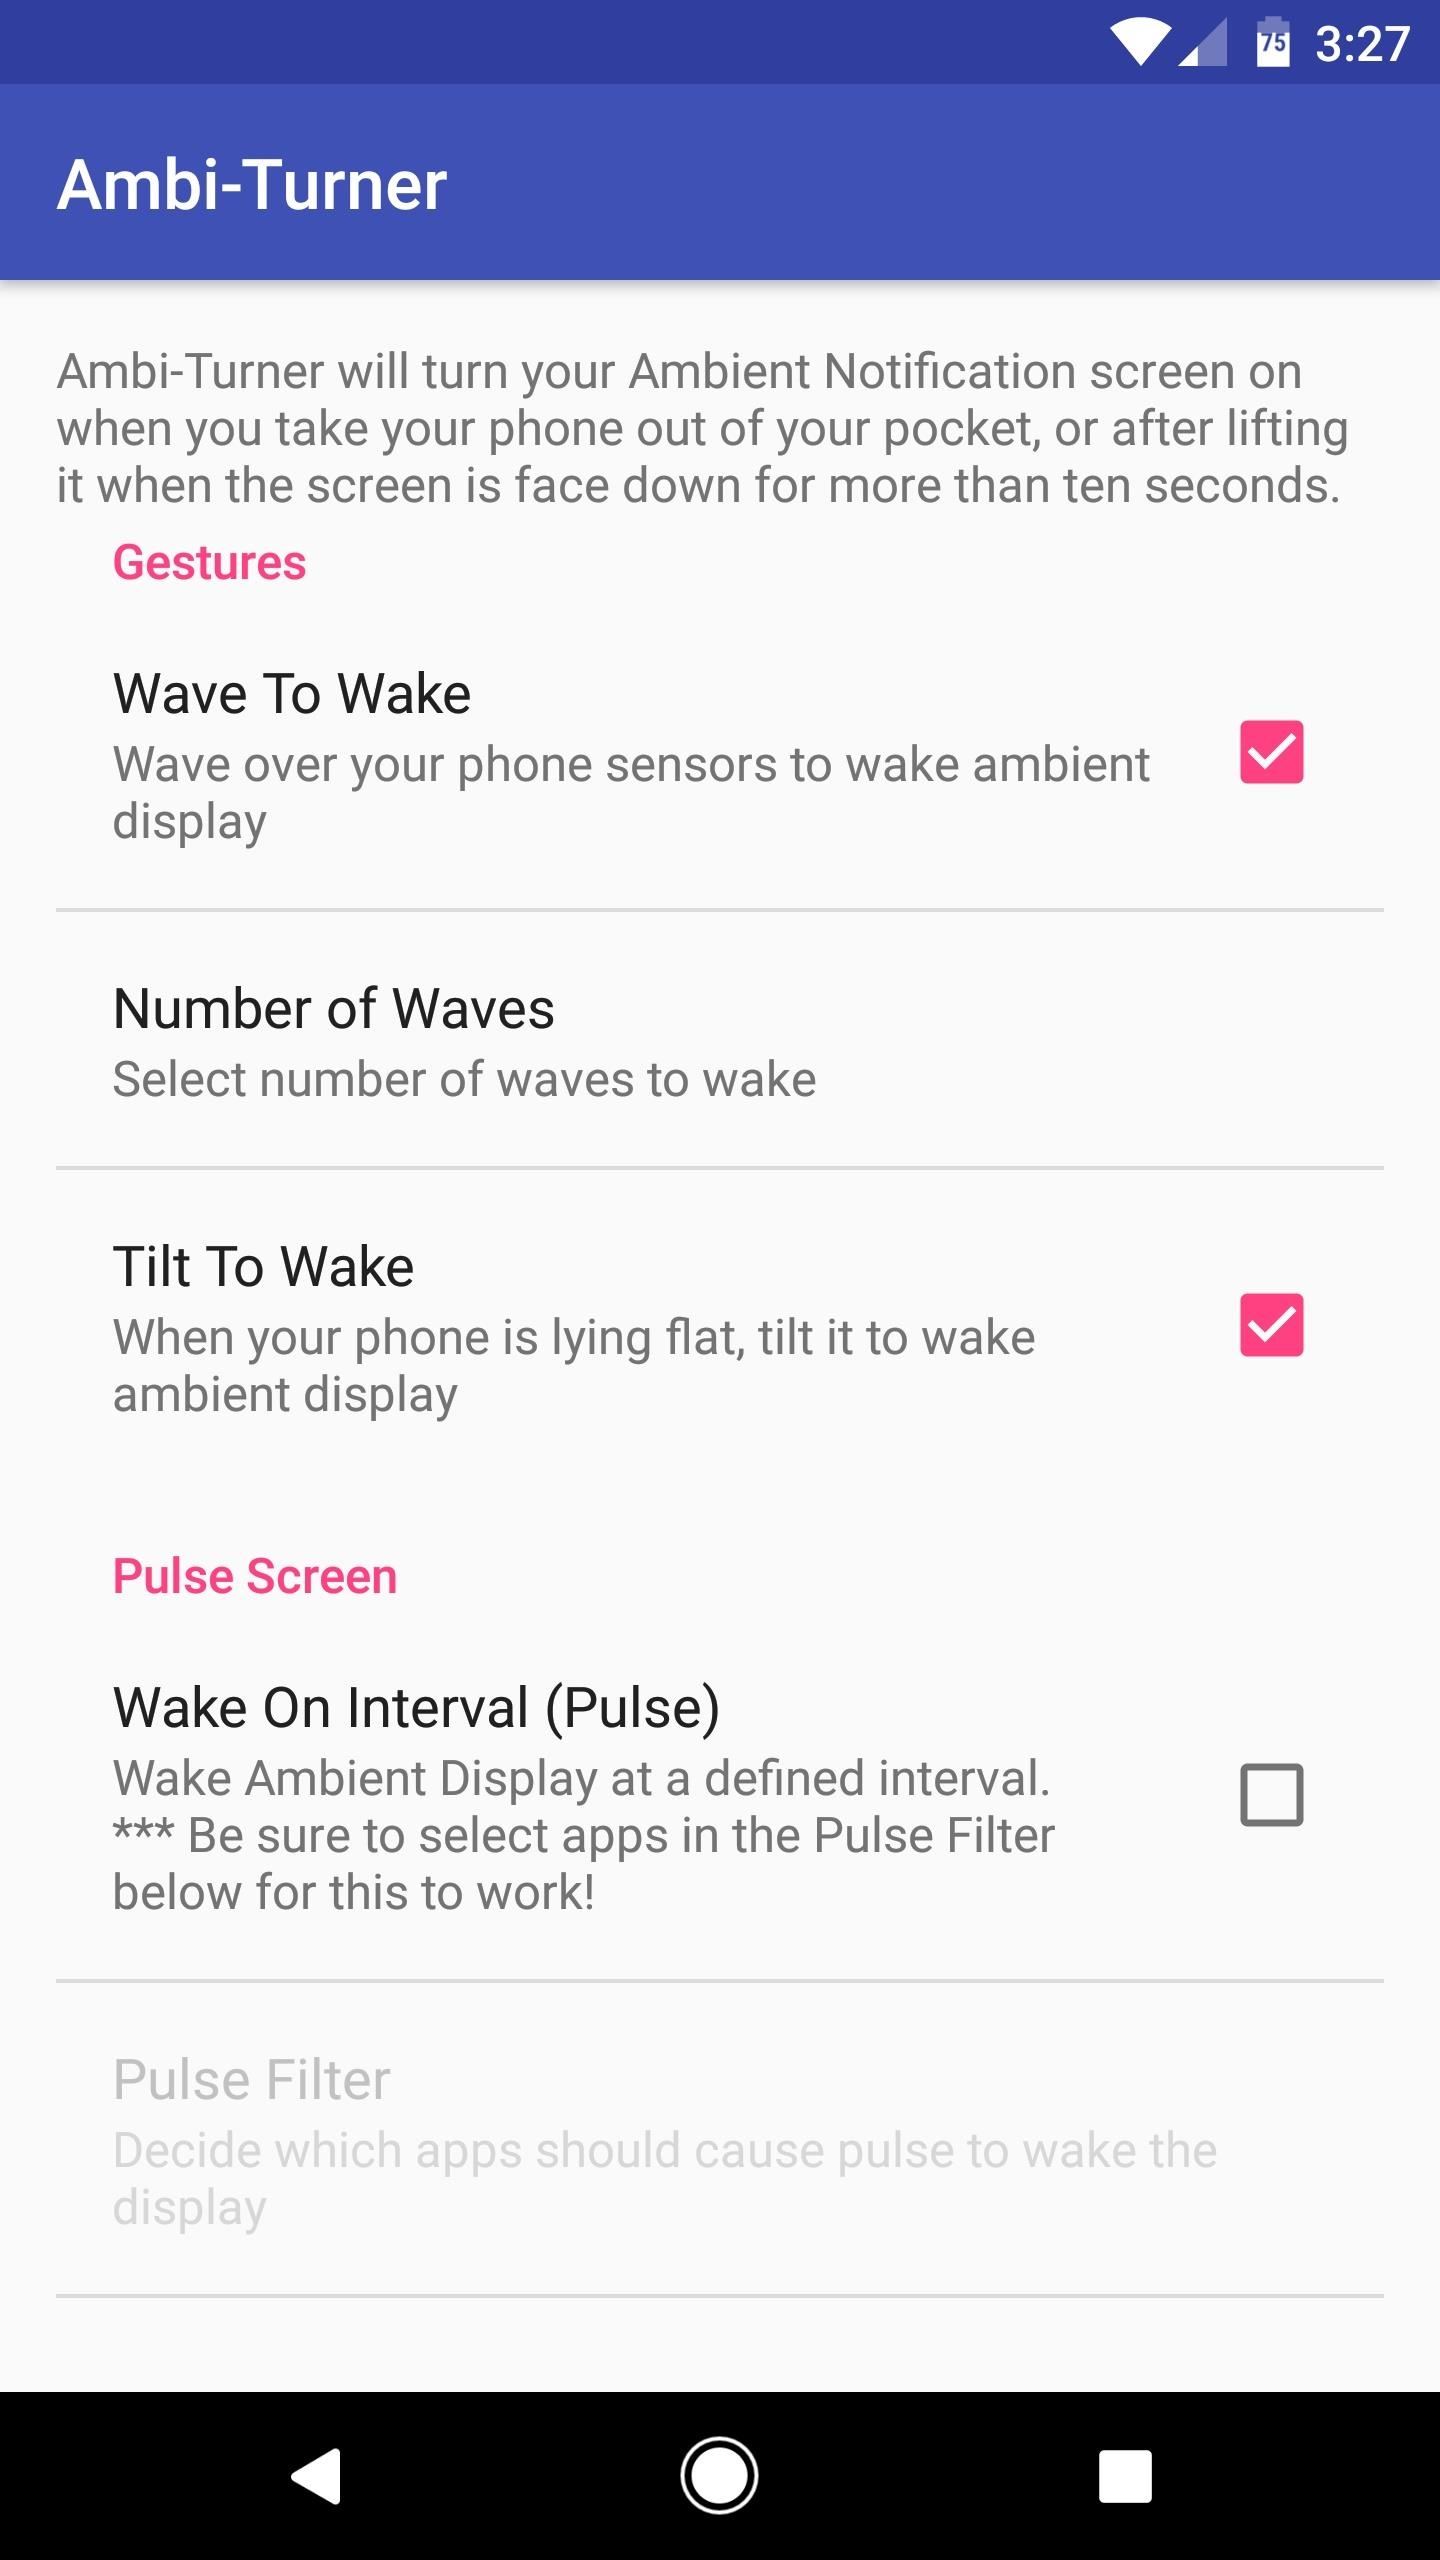 How to Get Motorola's Active Display Features on Your Pixel or Nexus